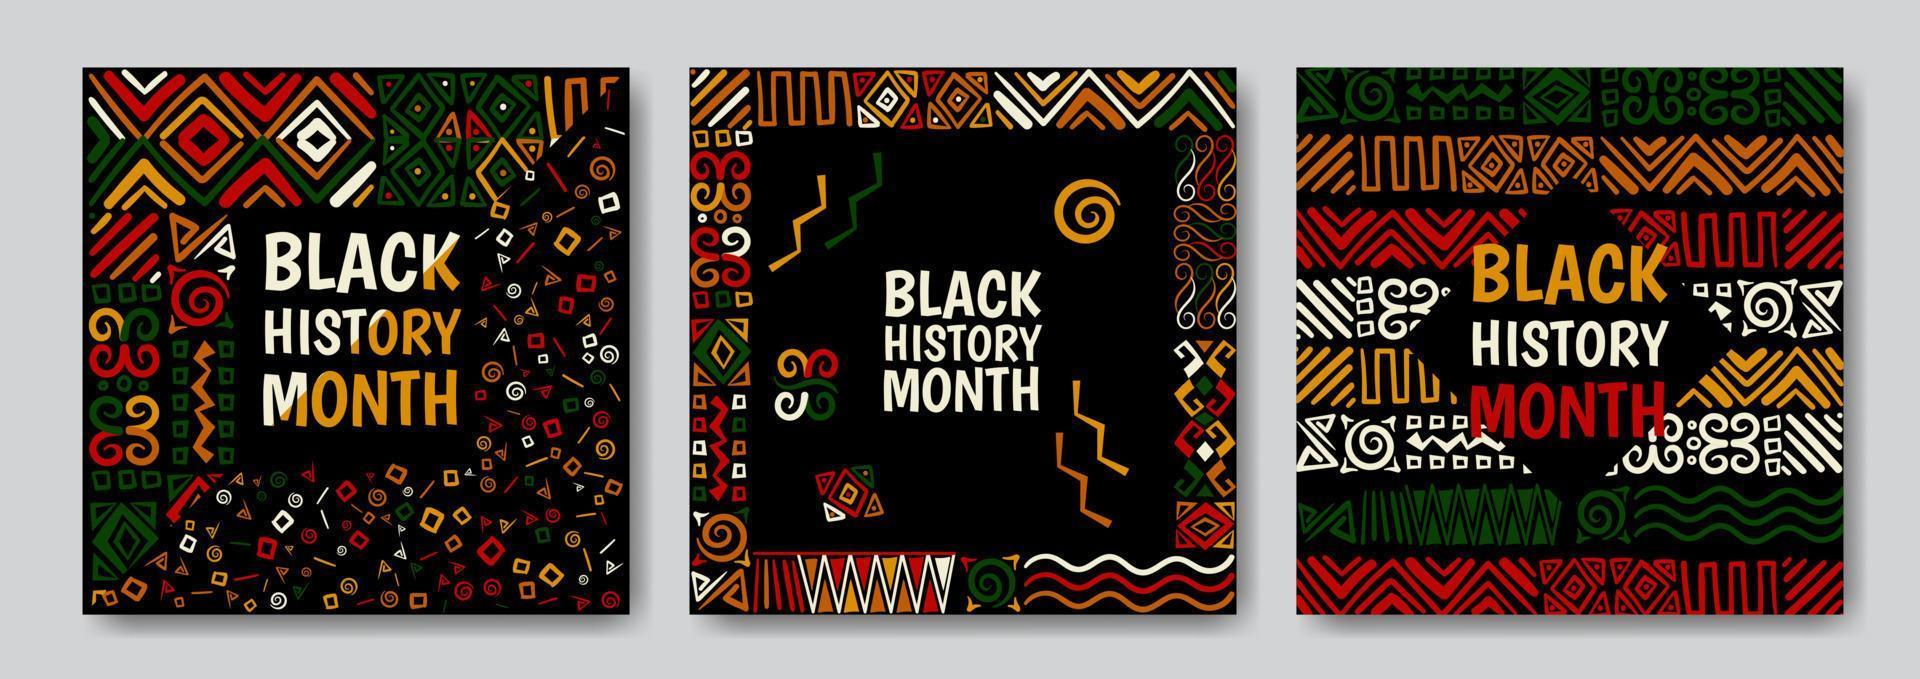 conjunto de fondos abstractos del mes de la historia negra con patrones vector